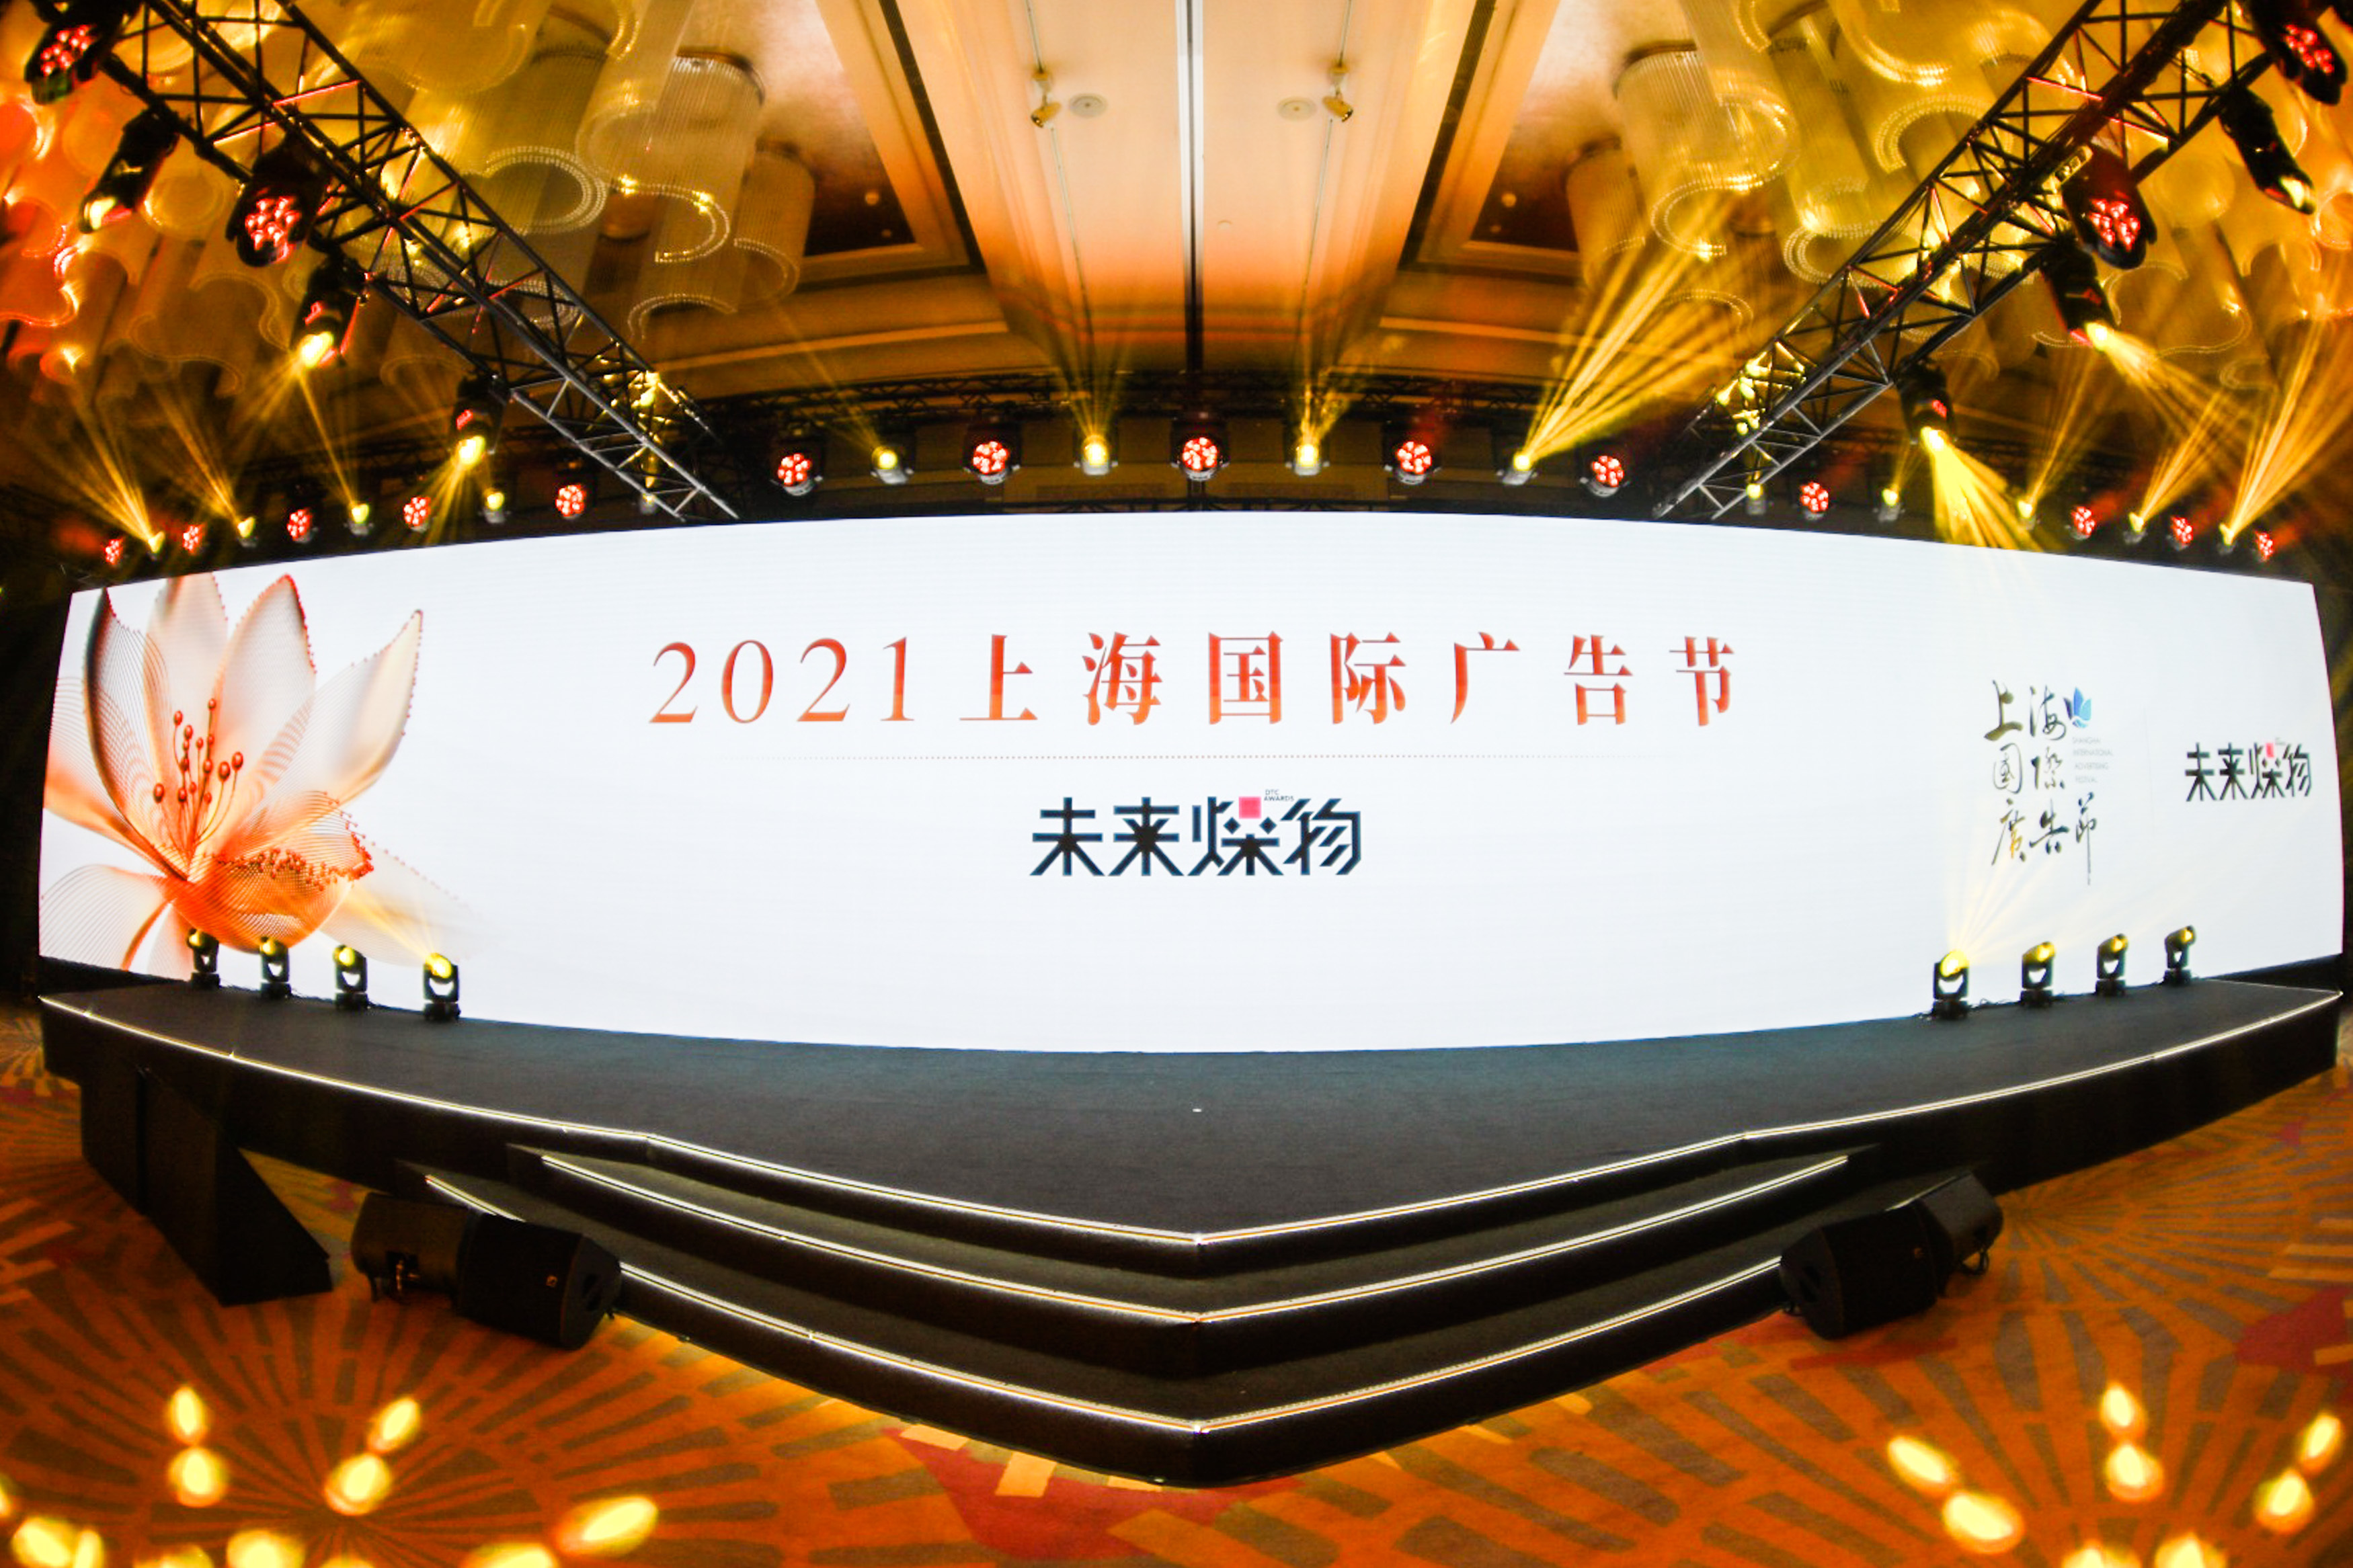 2021 上海国际广告节盛大开幕